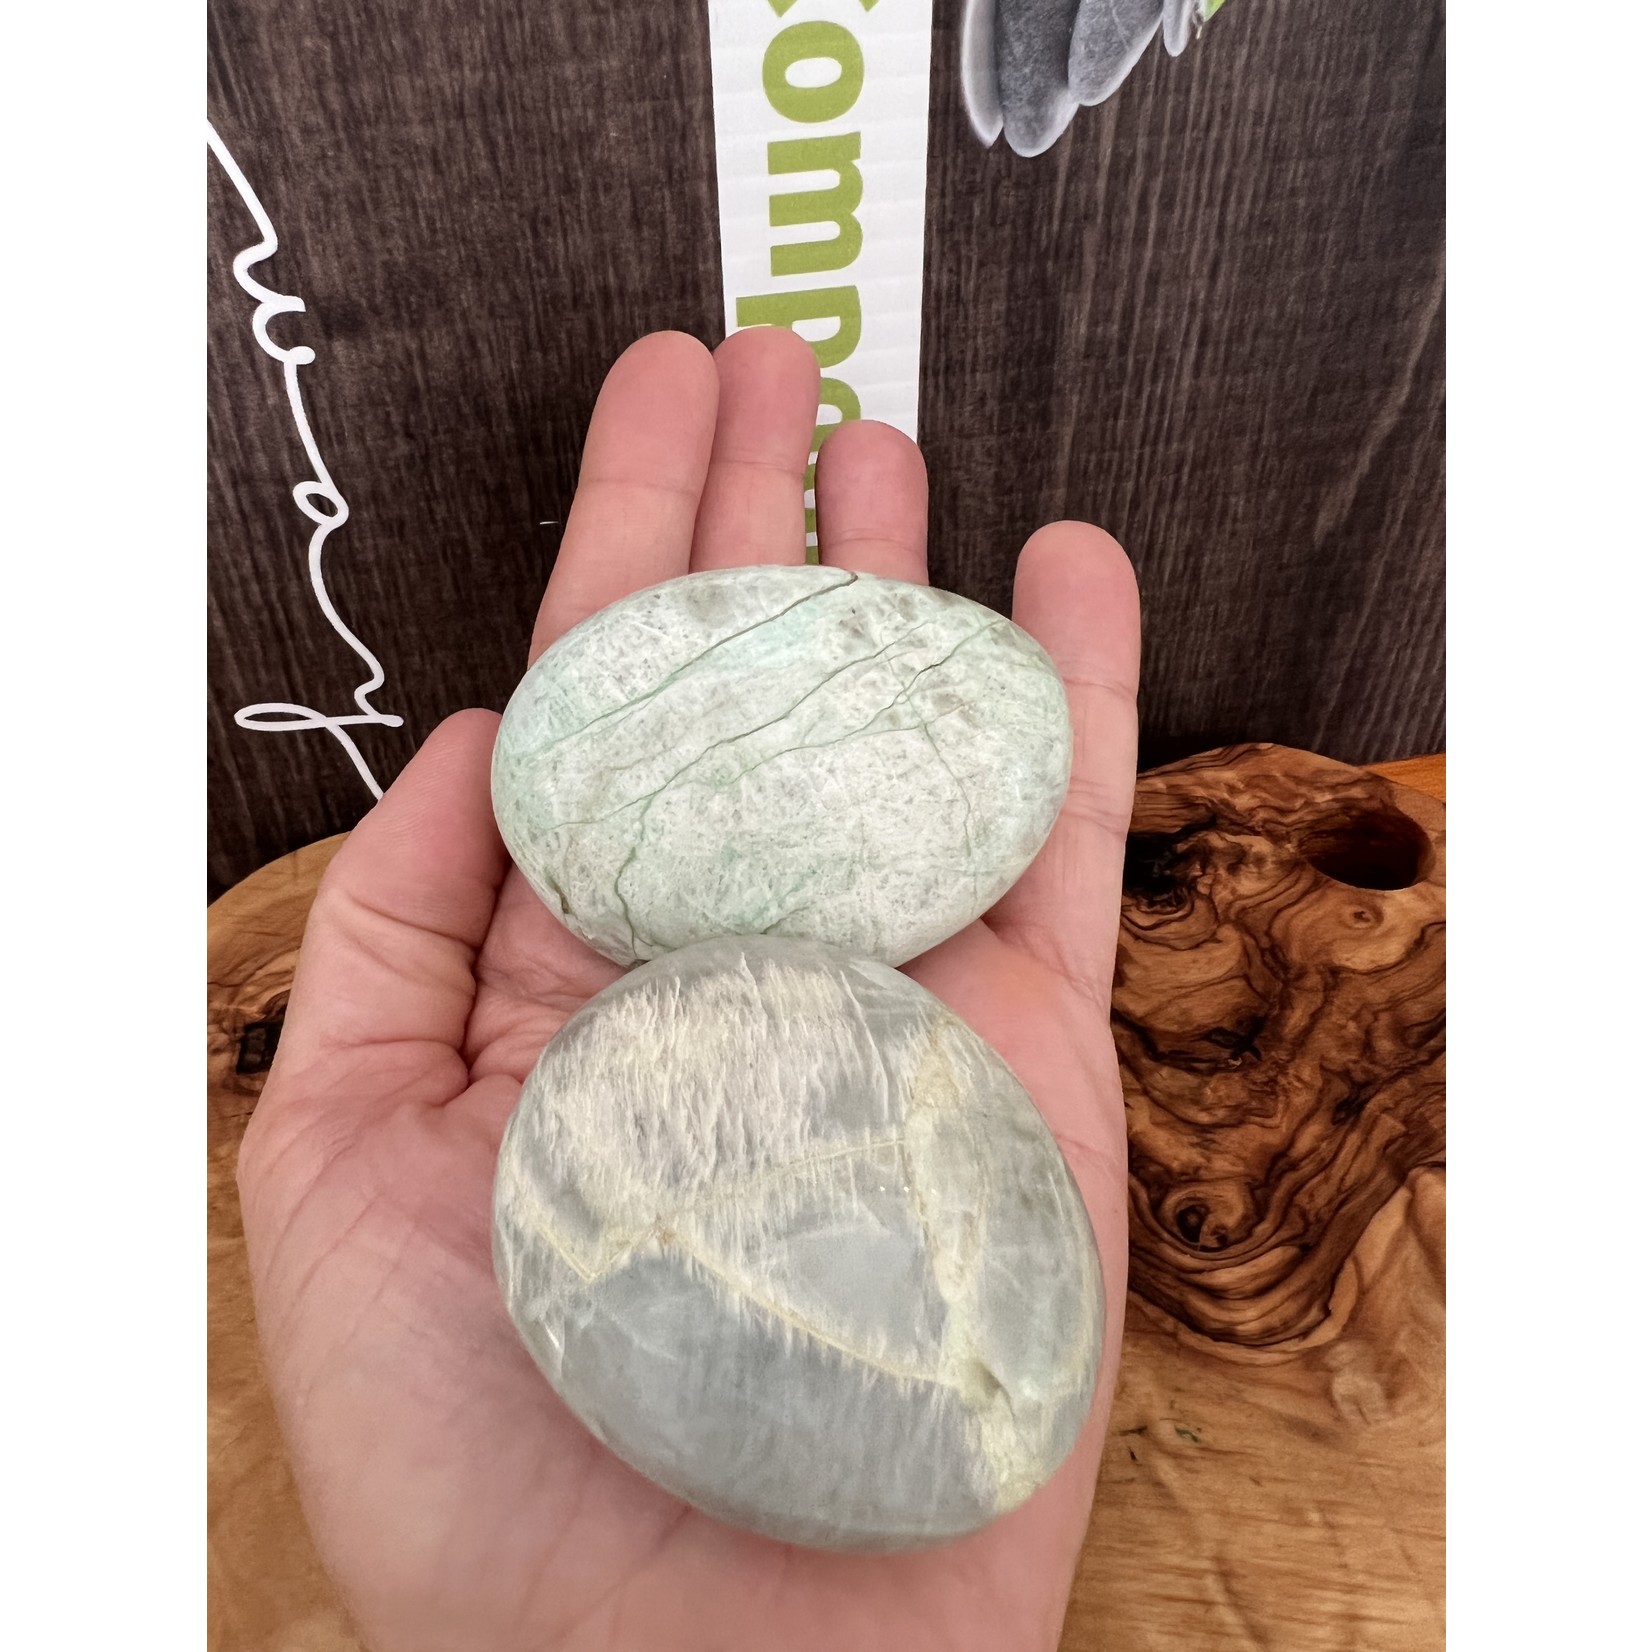 pierre garniérite paume de main polie, pierre de lune verte, pierre anti soucis de lune verte, augmente notre fréquence vibratoire